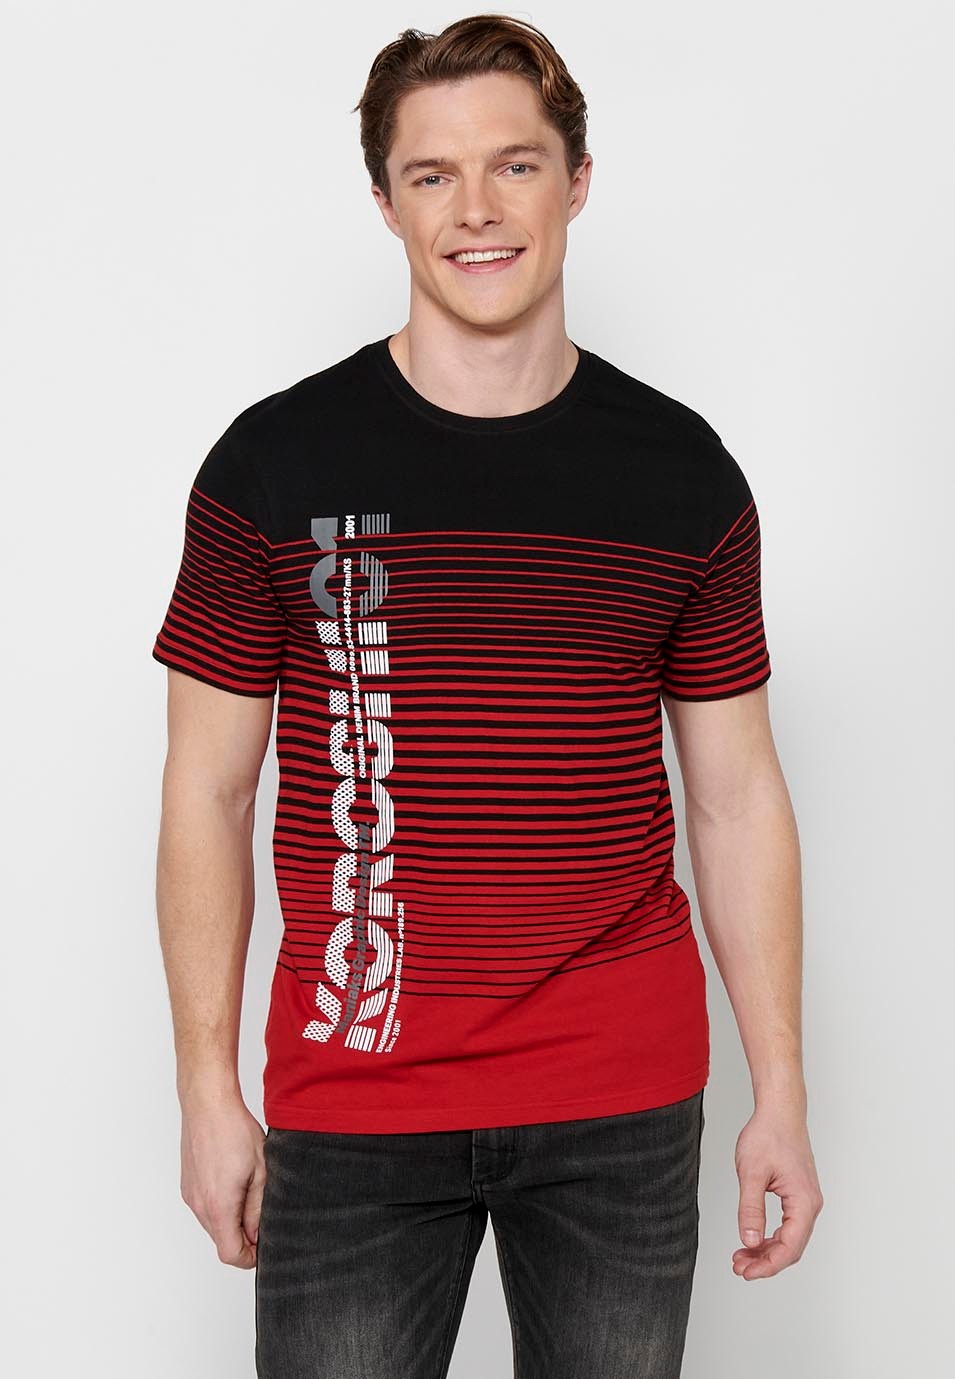 Camiseta de manga corta, estampado degradado a rayas, cuello redondo, color rojo para hombre